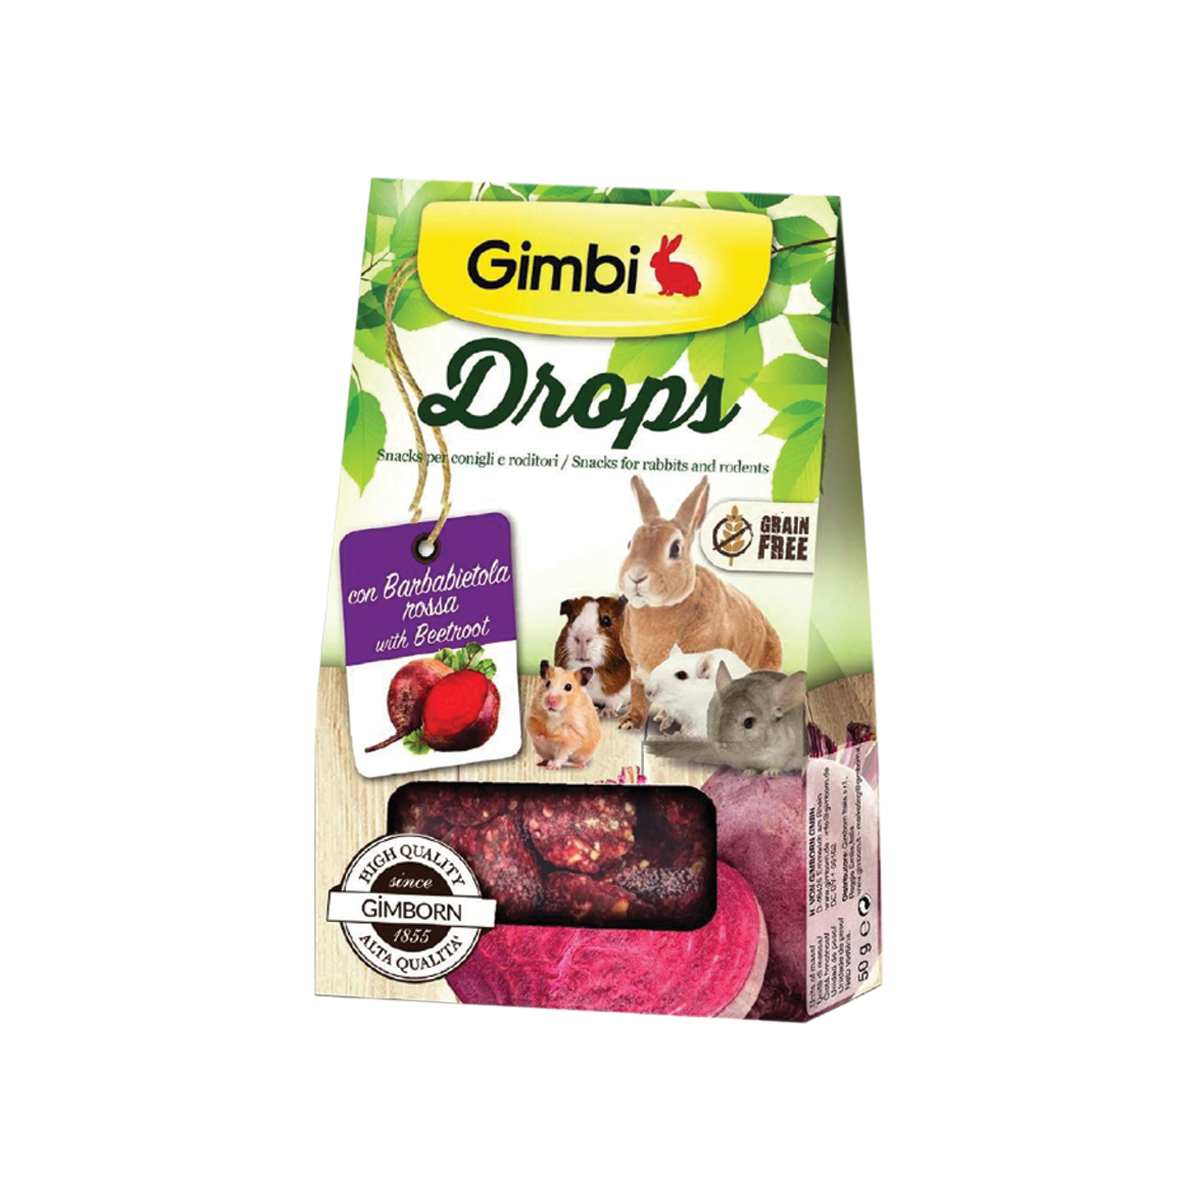 Gimbi Drops with Beetroot กิมบิ ขนมขบเคี้ยวผสมบีทรูทสำหรับกระต่ายและหนูสายพันธุ์เล็ก ขนาด 50 กรัม